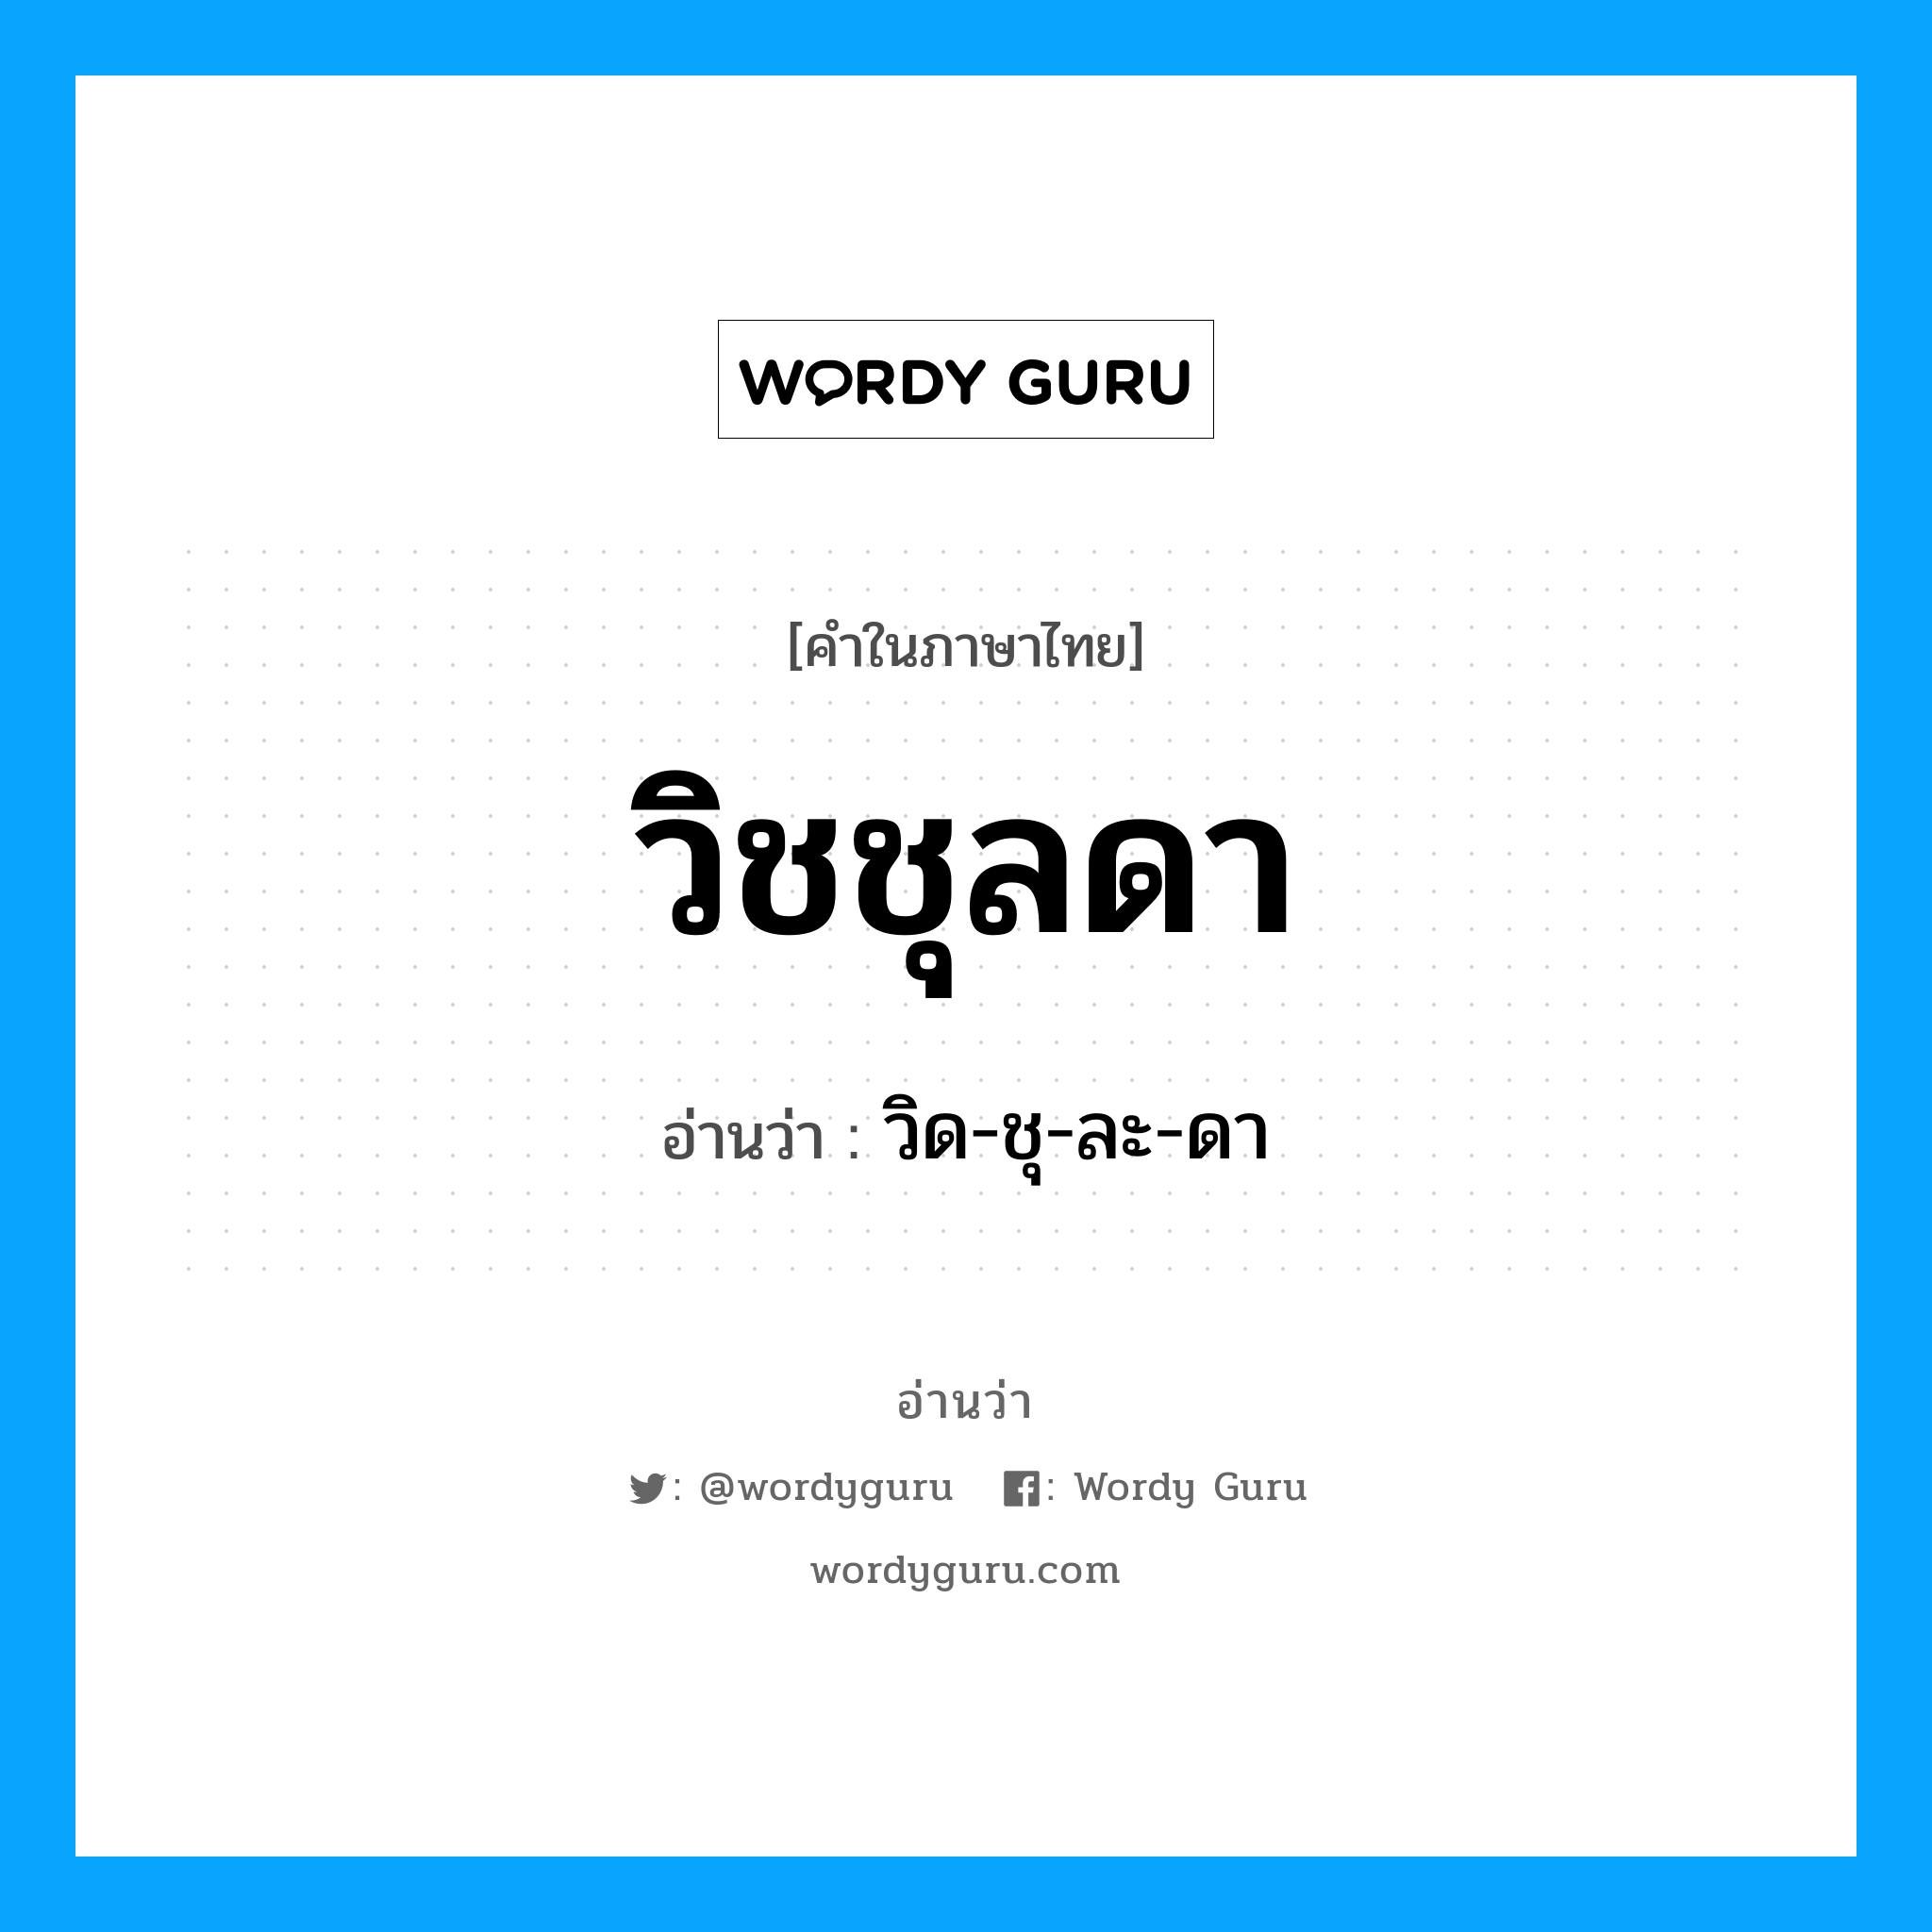 วิด-ชุ-ละ-ดา เป็นคำอ่านของคำไหน?, คำในภาษาไทย วิด-ชุ-ละ-ดา อ่านว่า วิชชุลดา